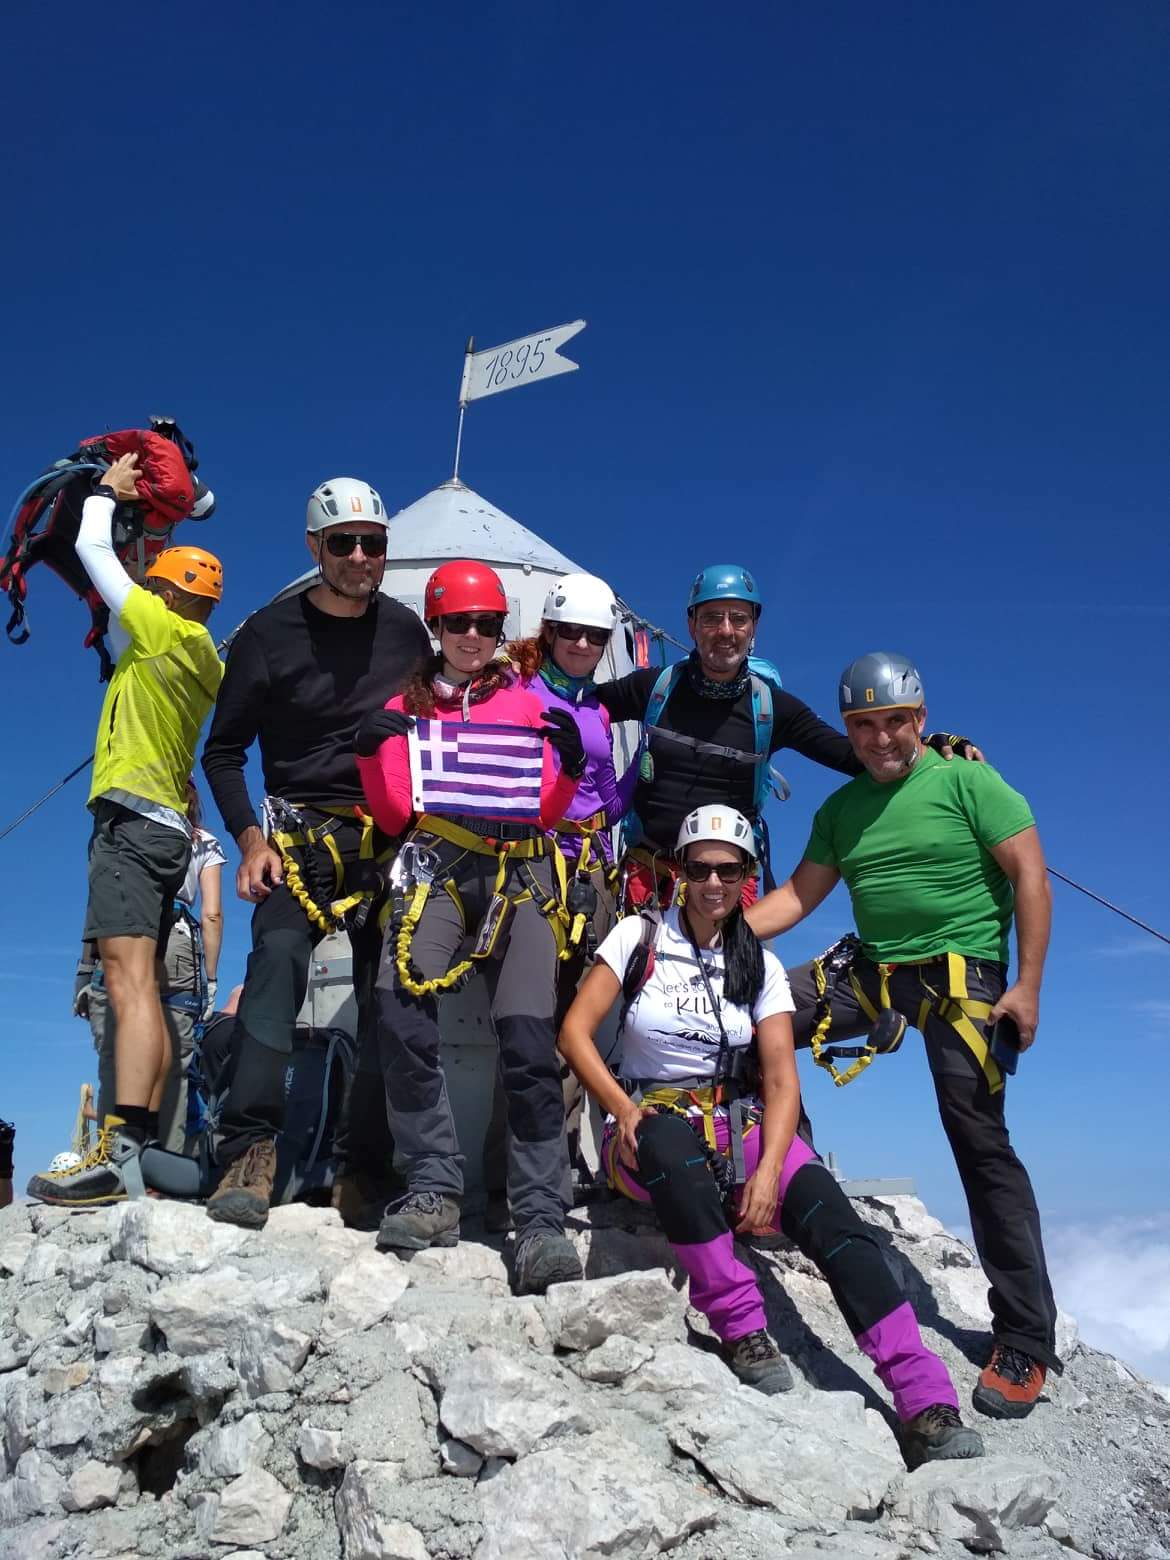 Στην ψηλότερη κορυφή των Ιουλιανών Άλπεων μέλη του Ορειβατικού Συλ. Χανίων